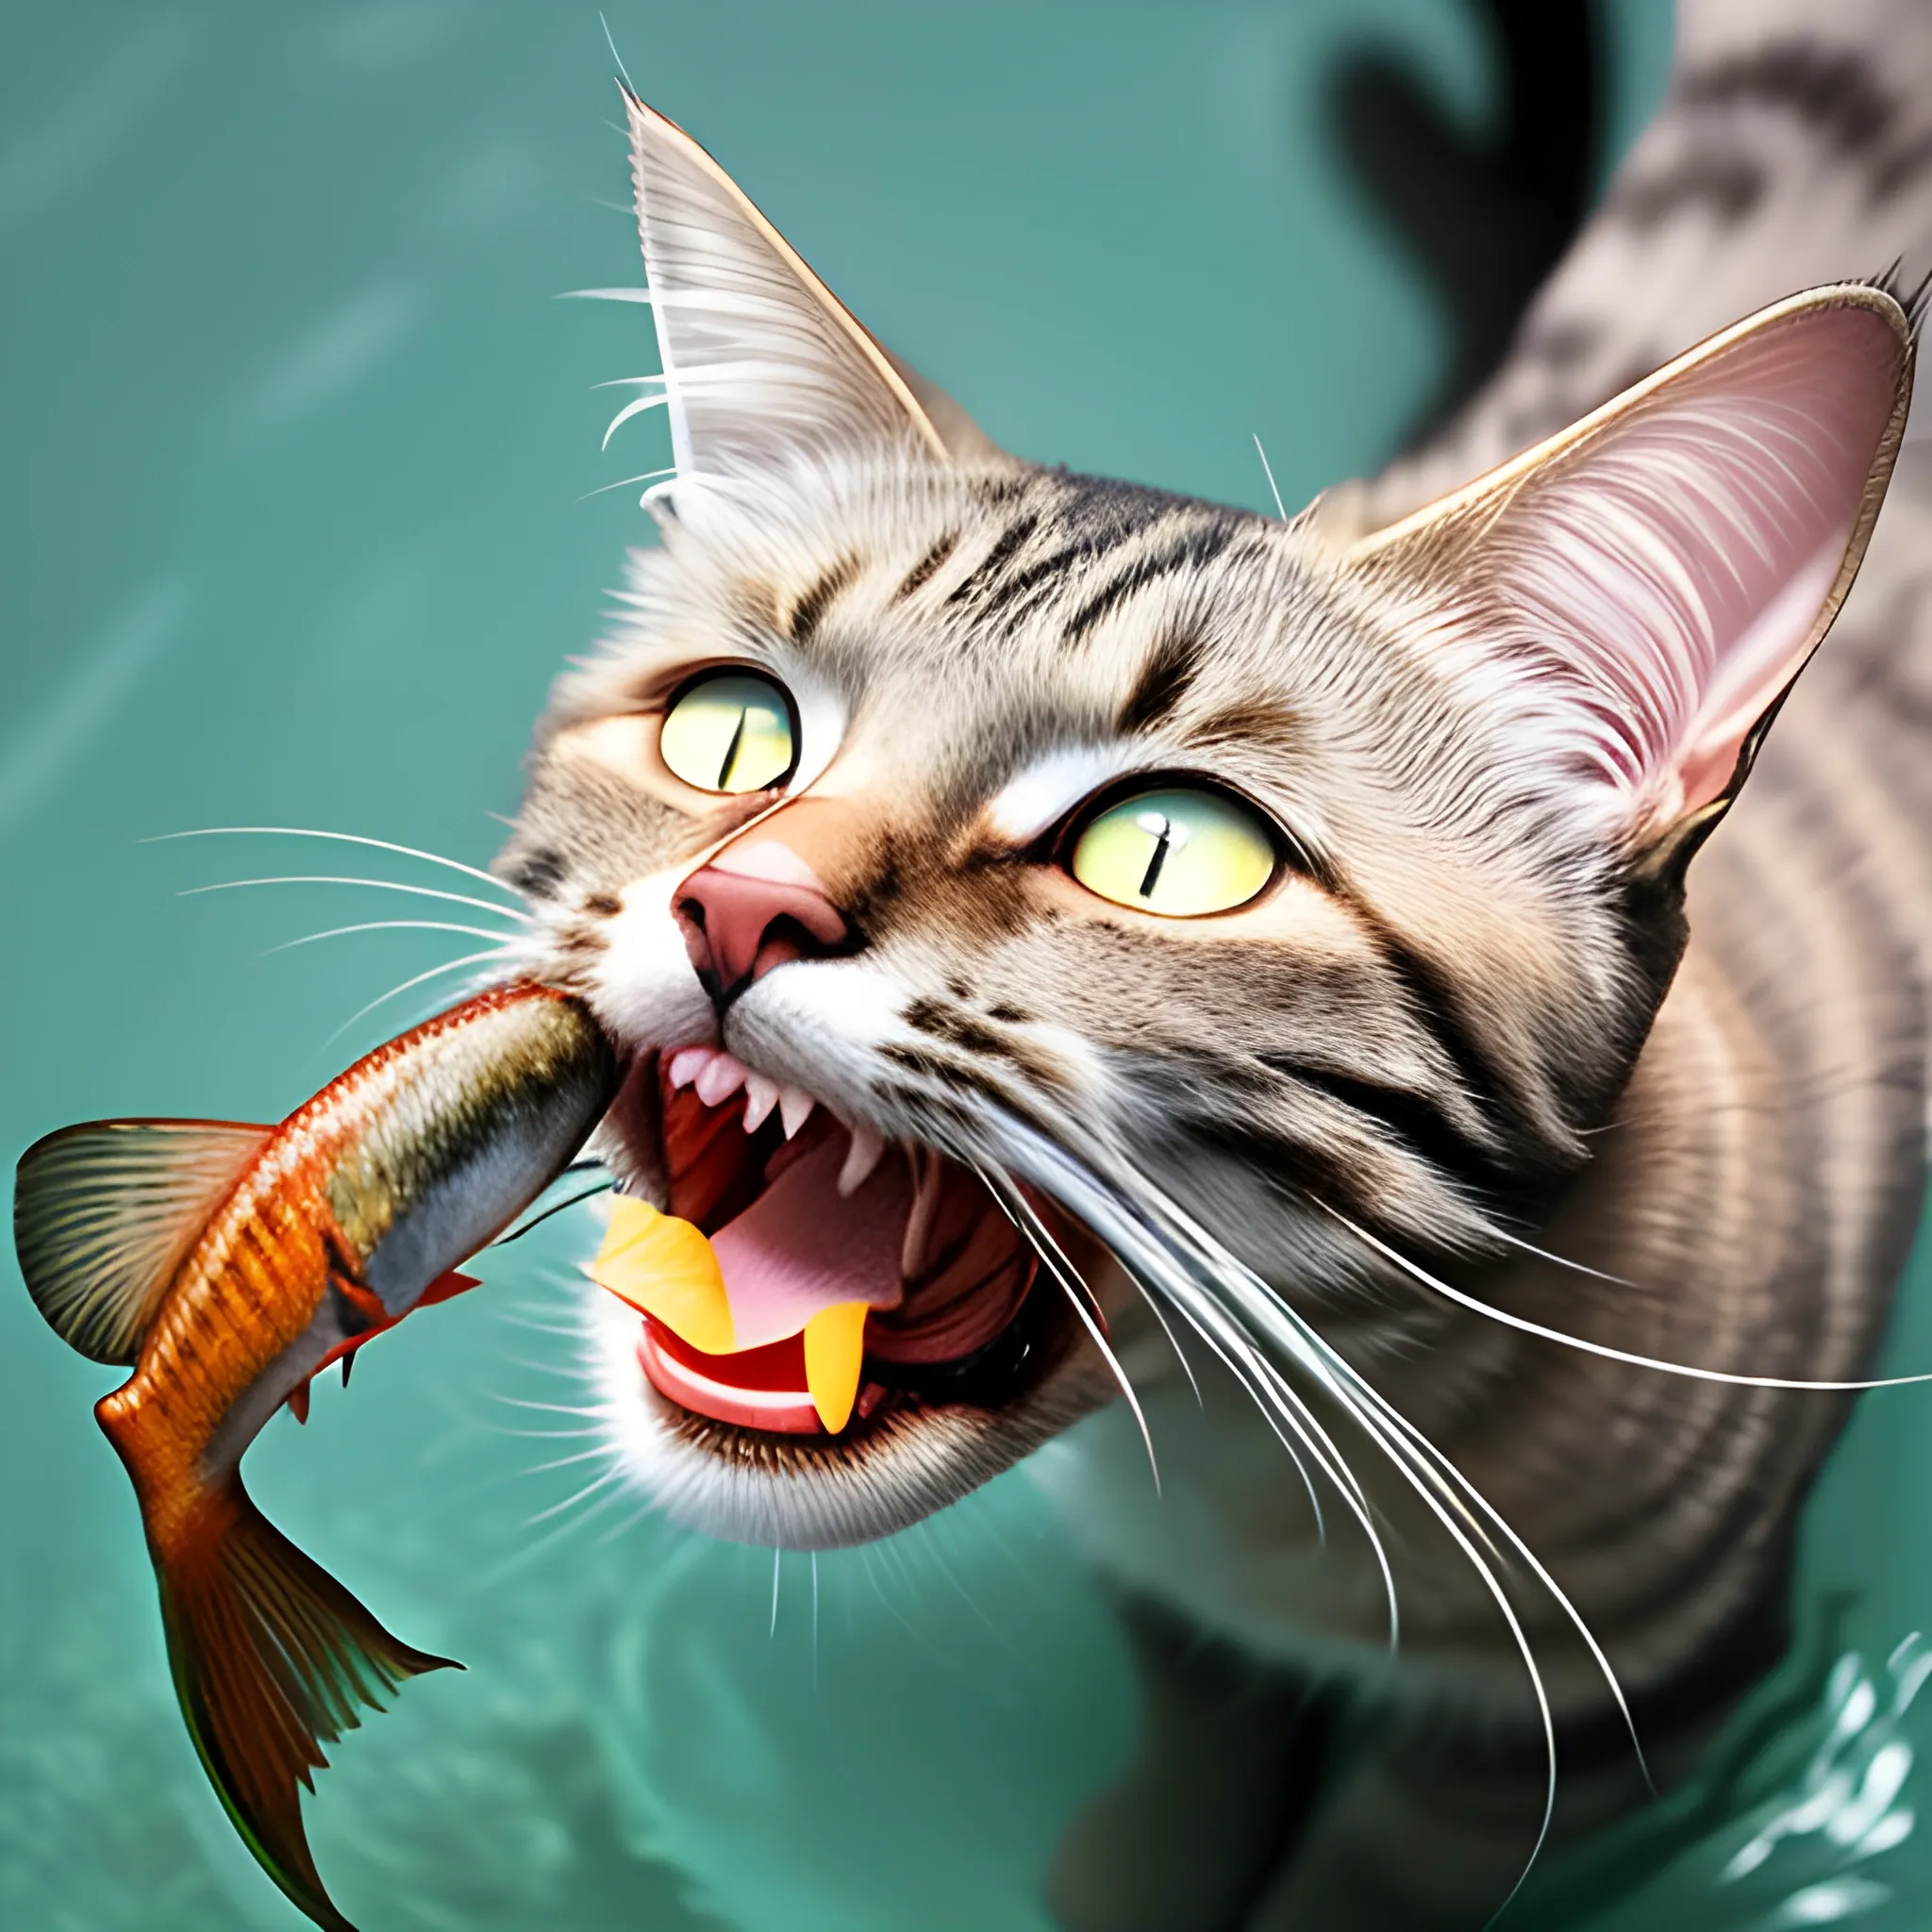 Cat eating fish